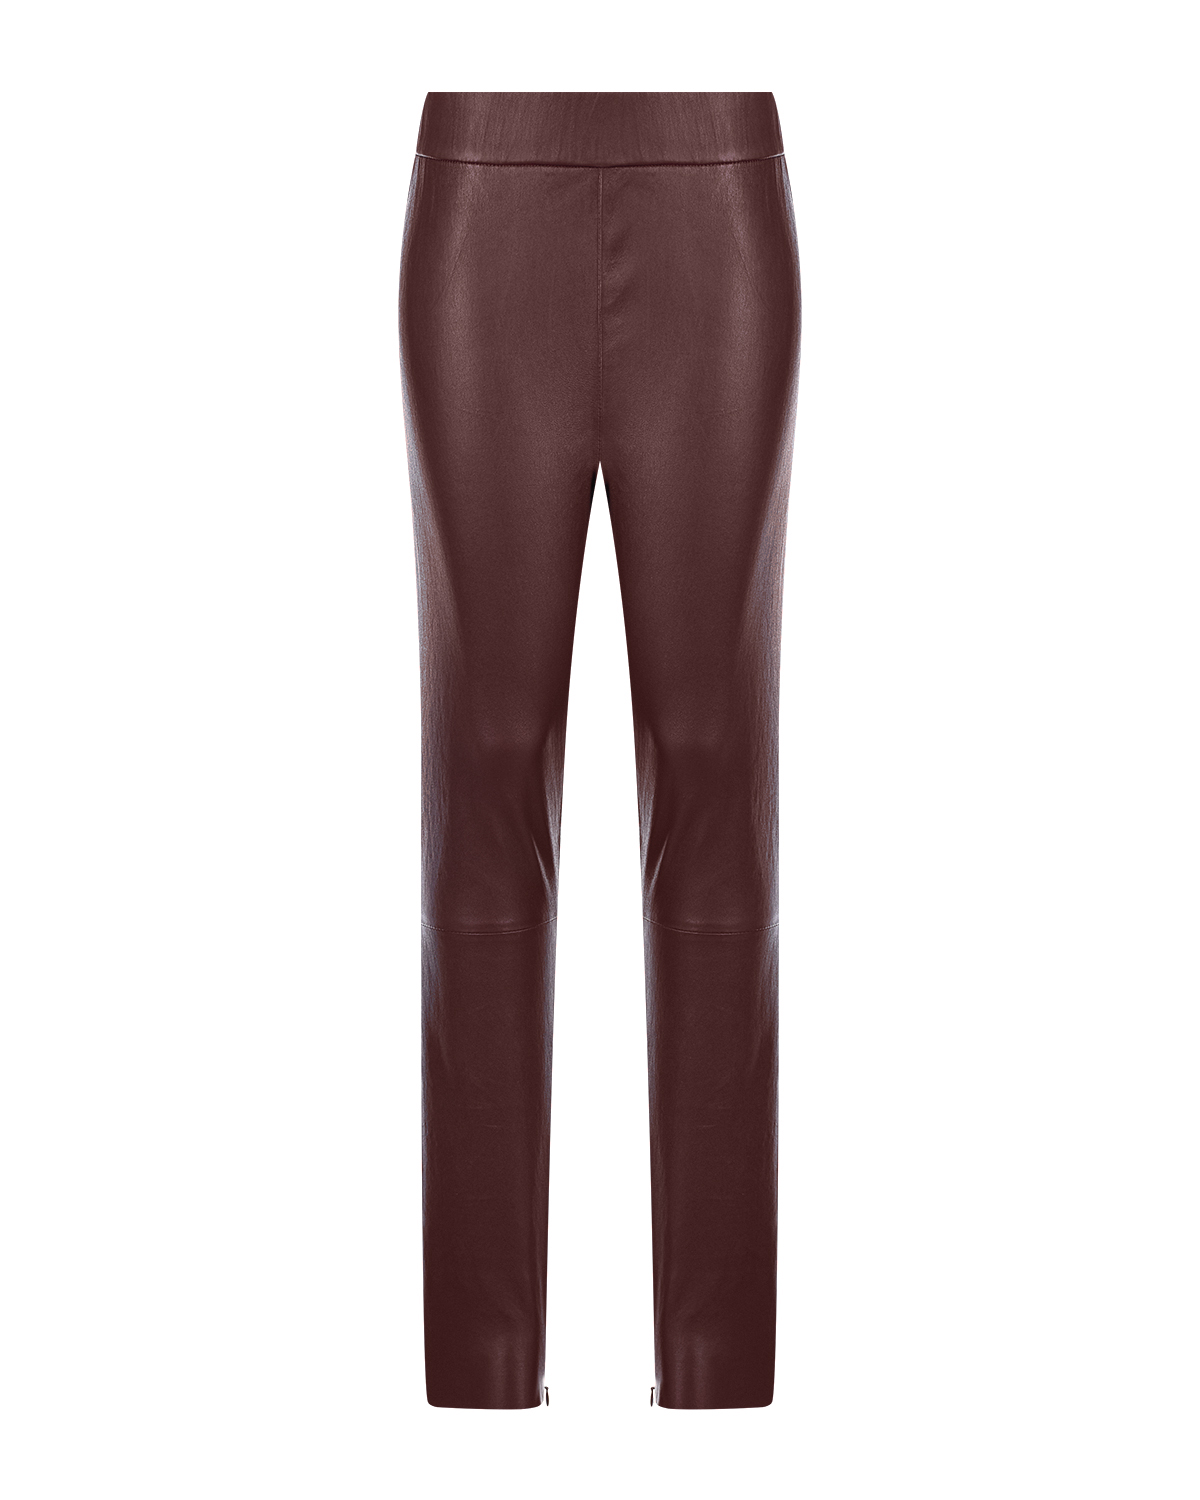 Коричневые брюки из кожи Benedetta Novi, размер 42, цвет бордовый - фото 1